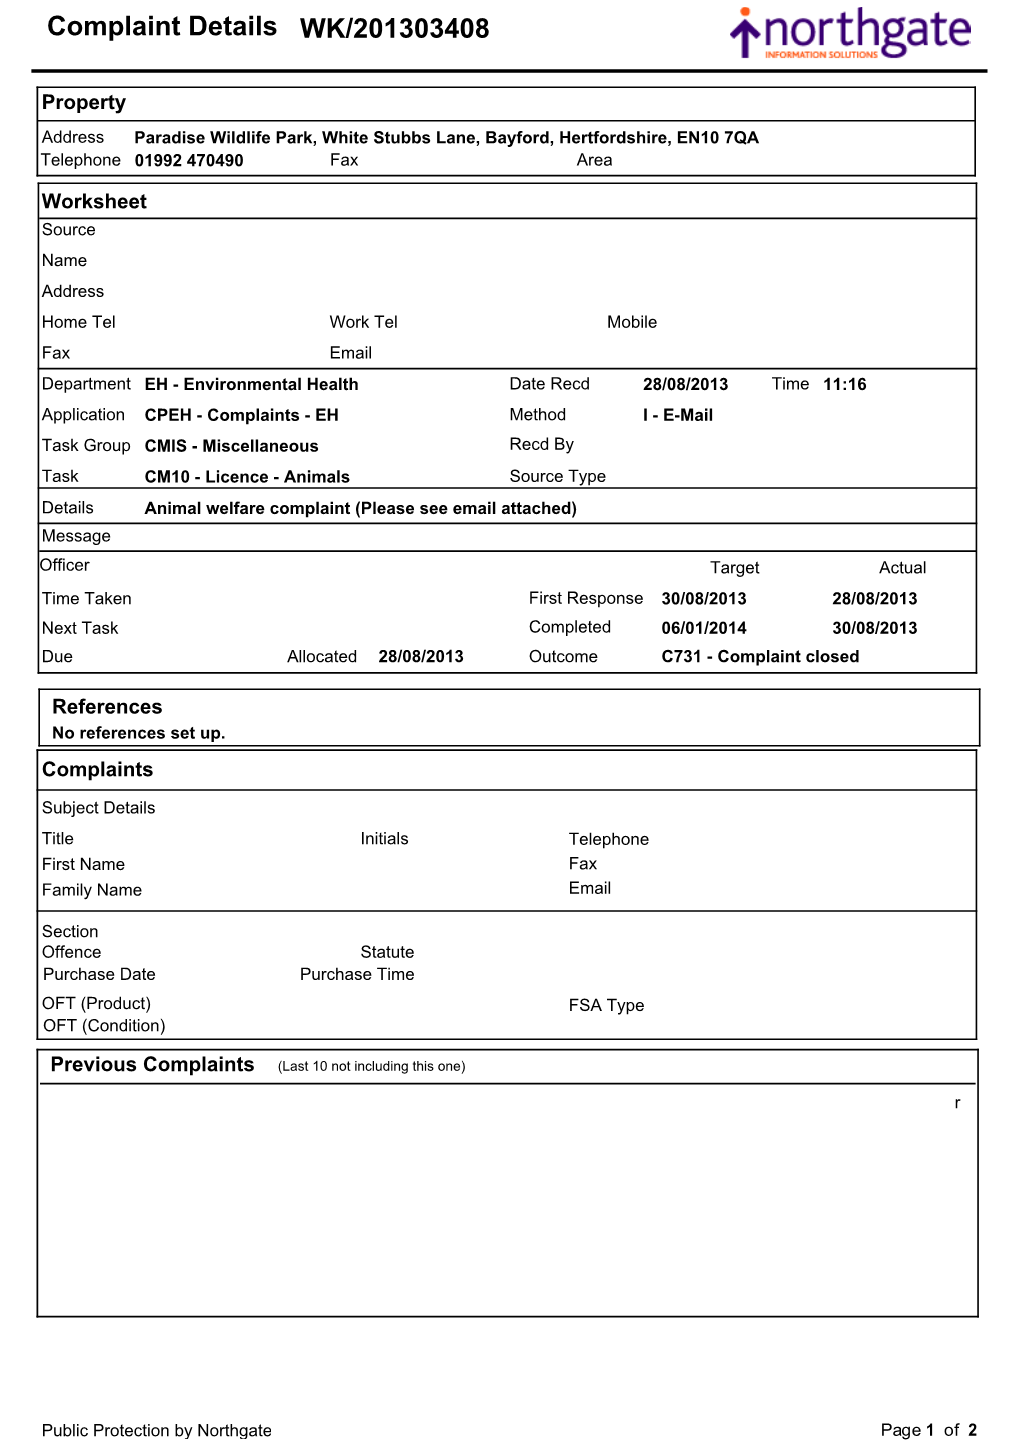 Complaint Details WK/201303408